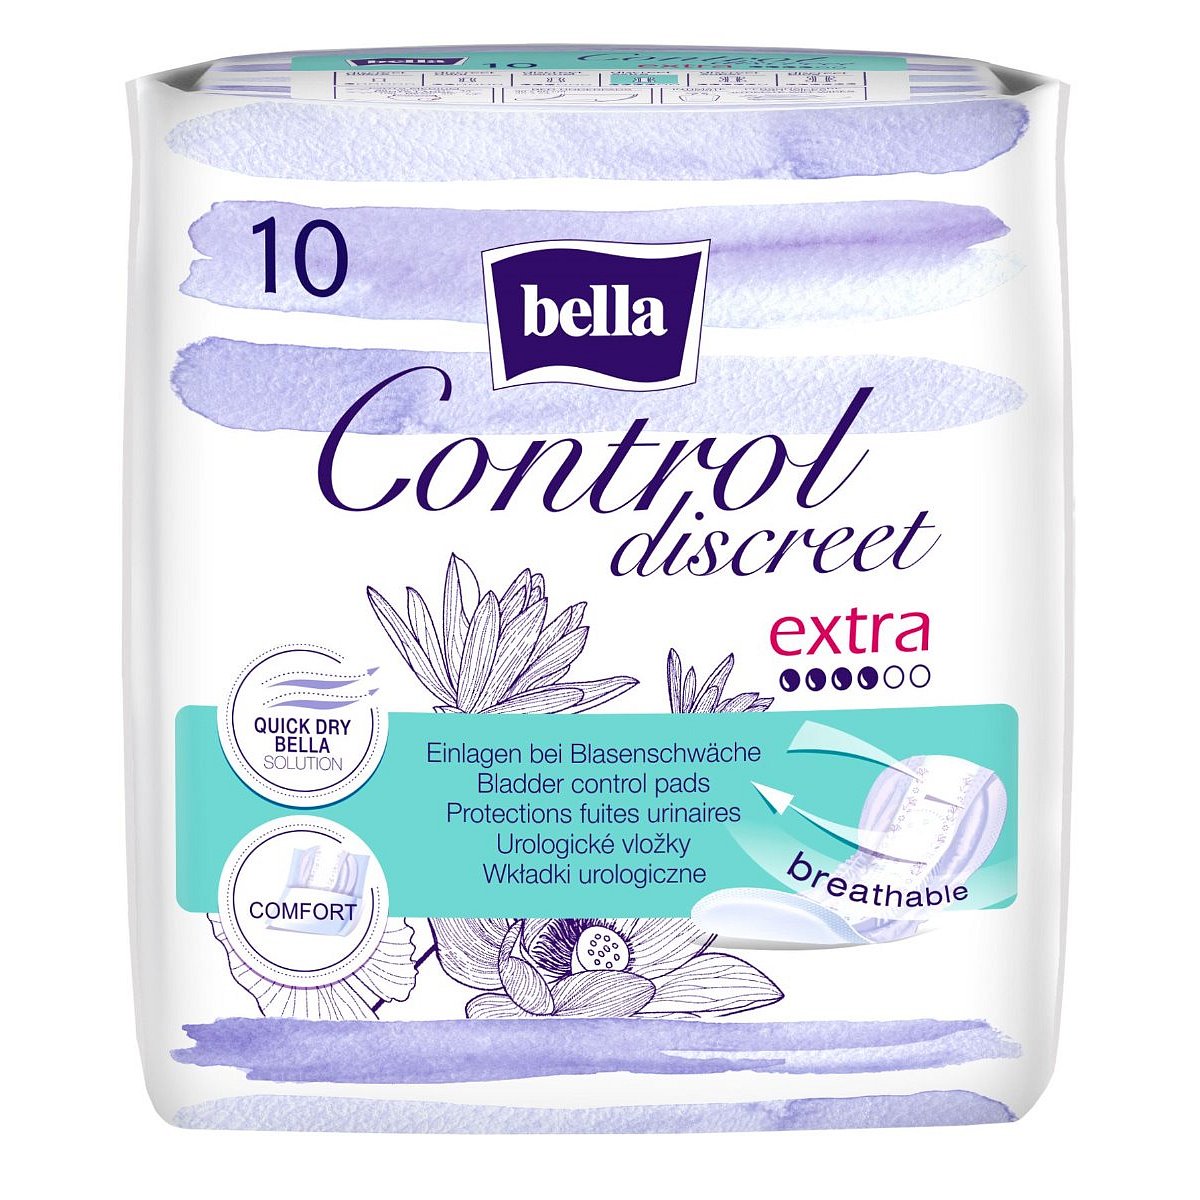 Bella Control Discreet extra urologické vložky 10 ks